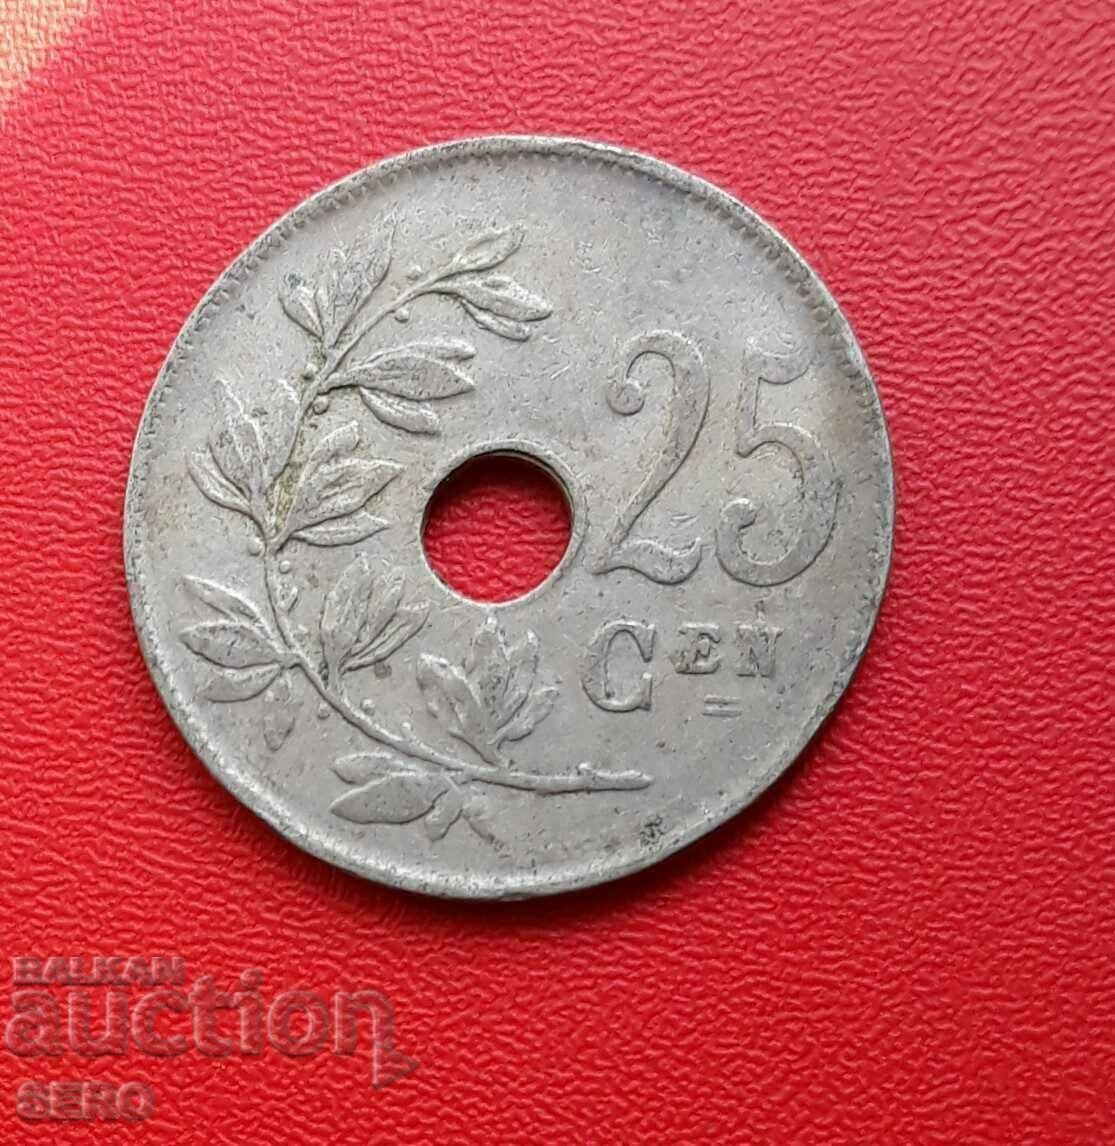 Belgium-25 cents 1922